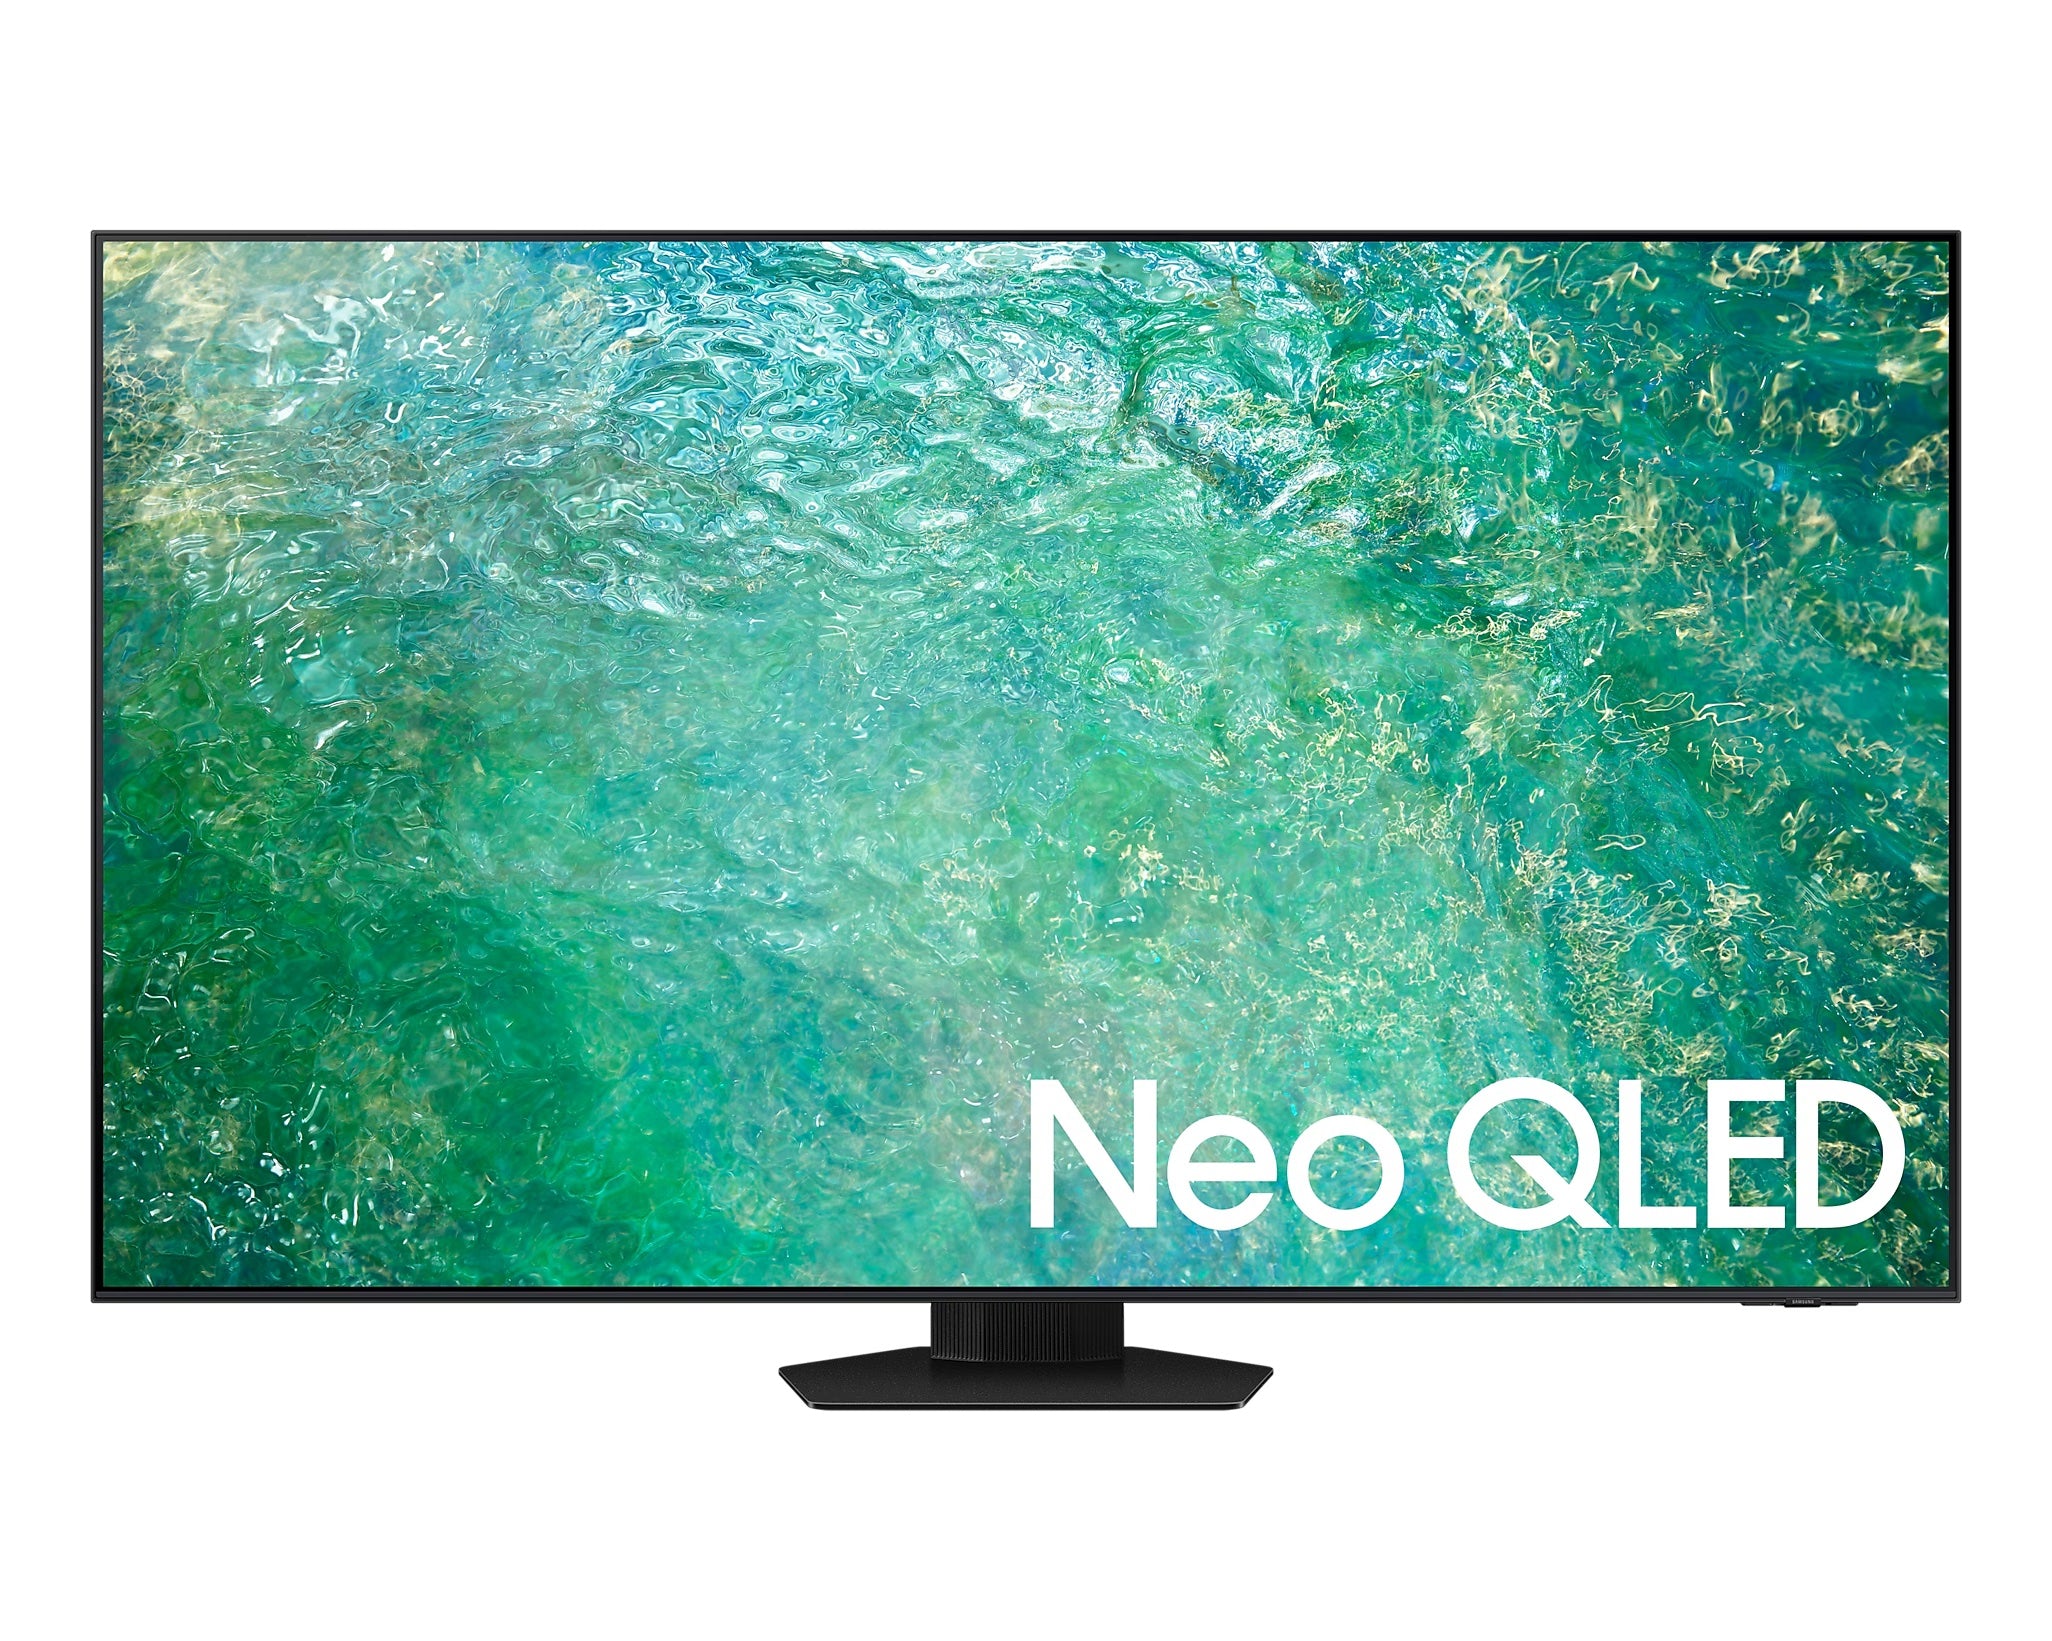 Samsung 三星 QN85C 系列 4K Neo QLED 電視